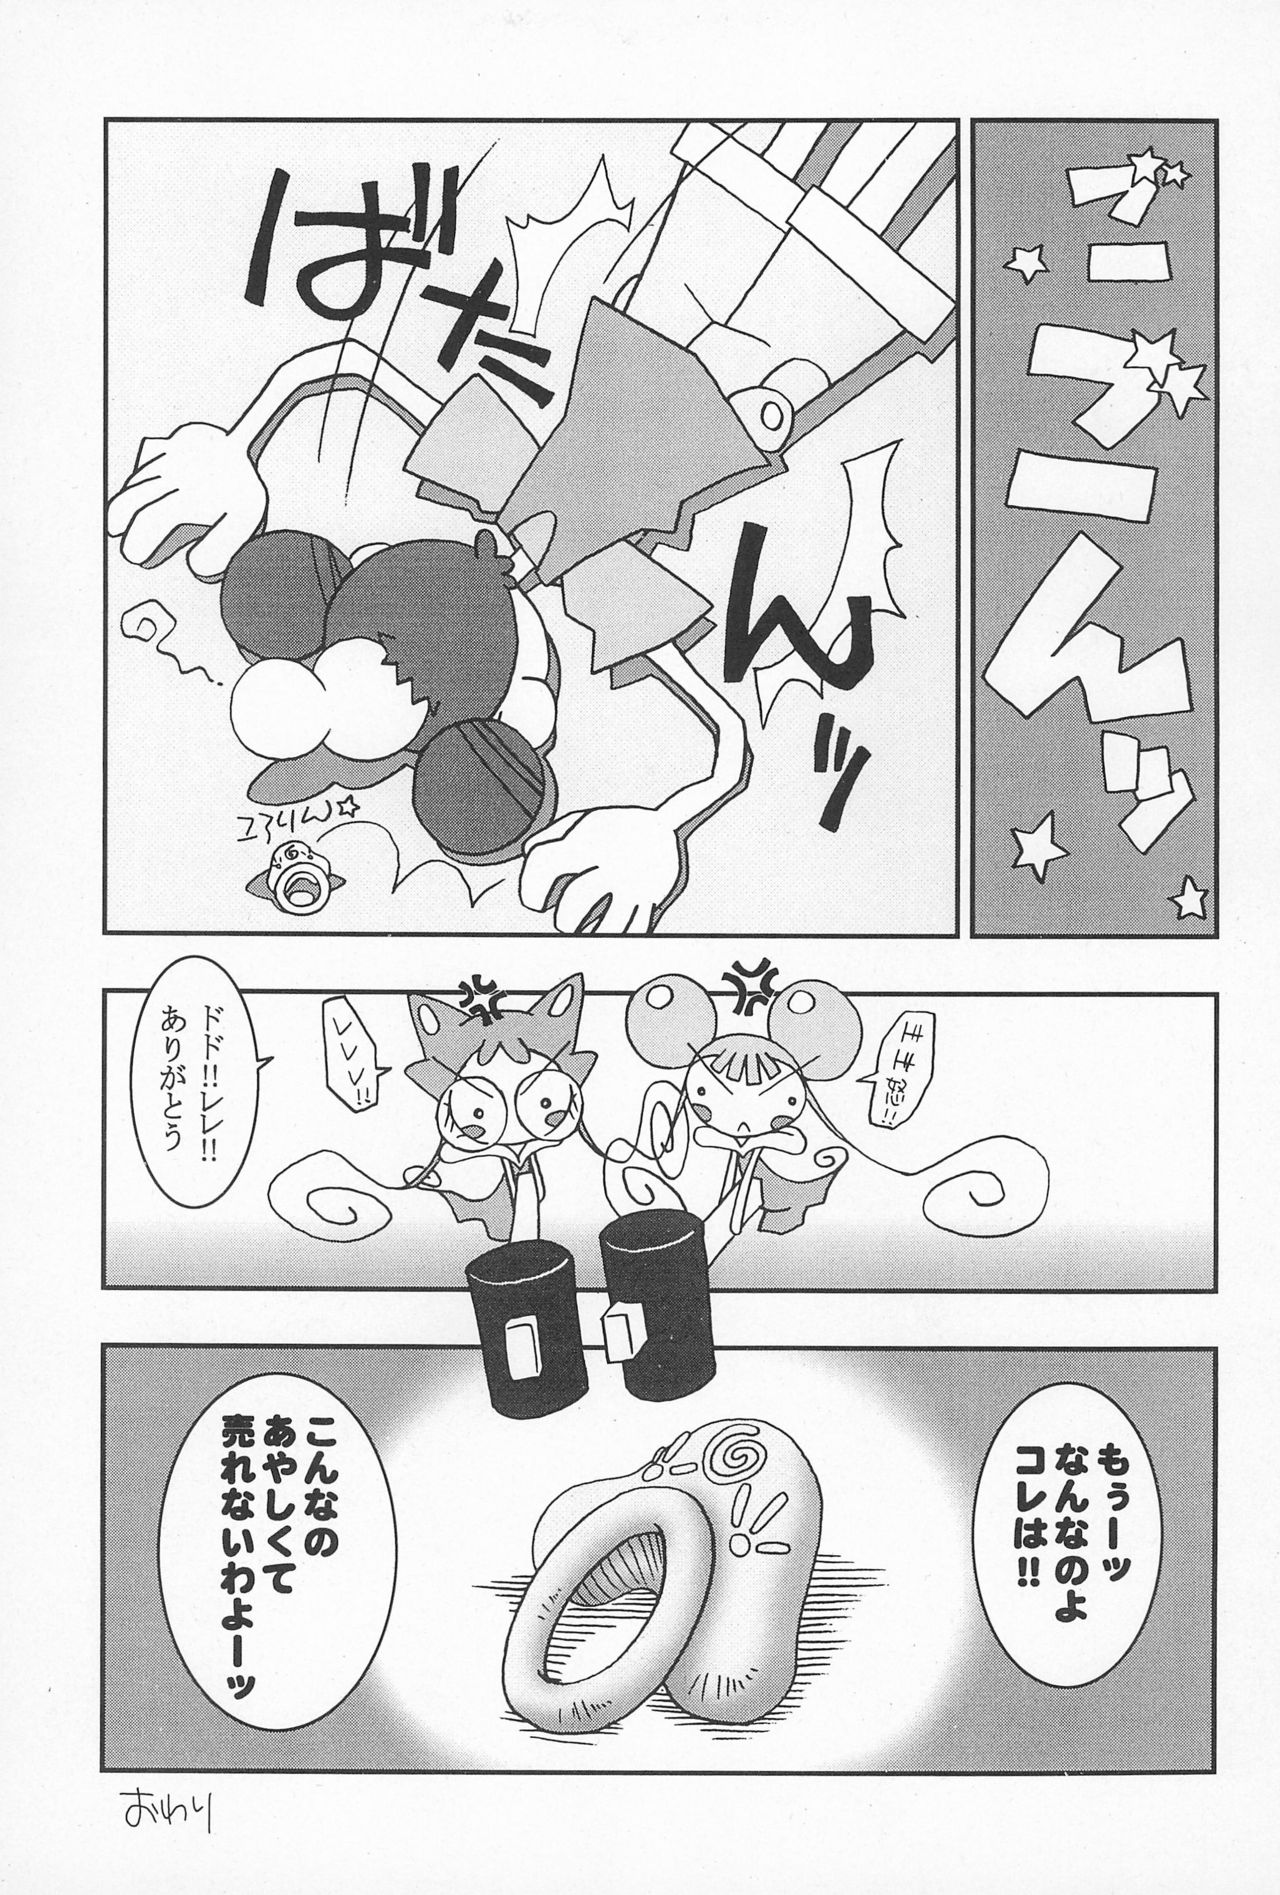 (CR25) [Nekketsu Kouenji Housoukyoku, KENIX (Katori Youichi, Ninnin!)] Doremi Fa So La Si Do (Ojamajo Doremi) page 9 full